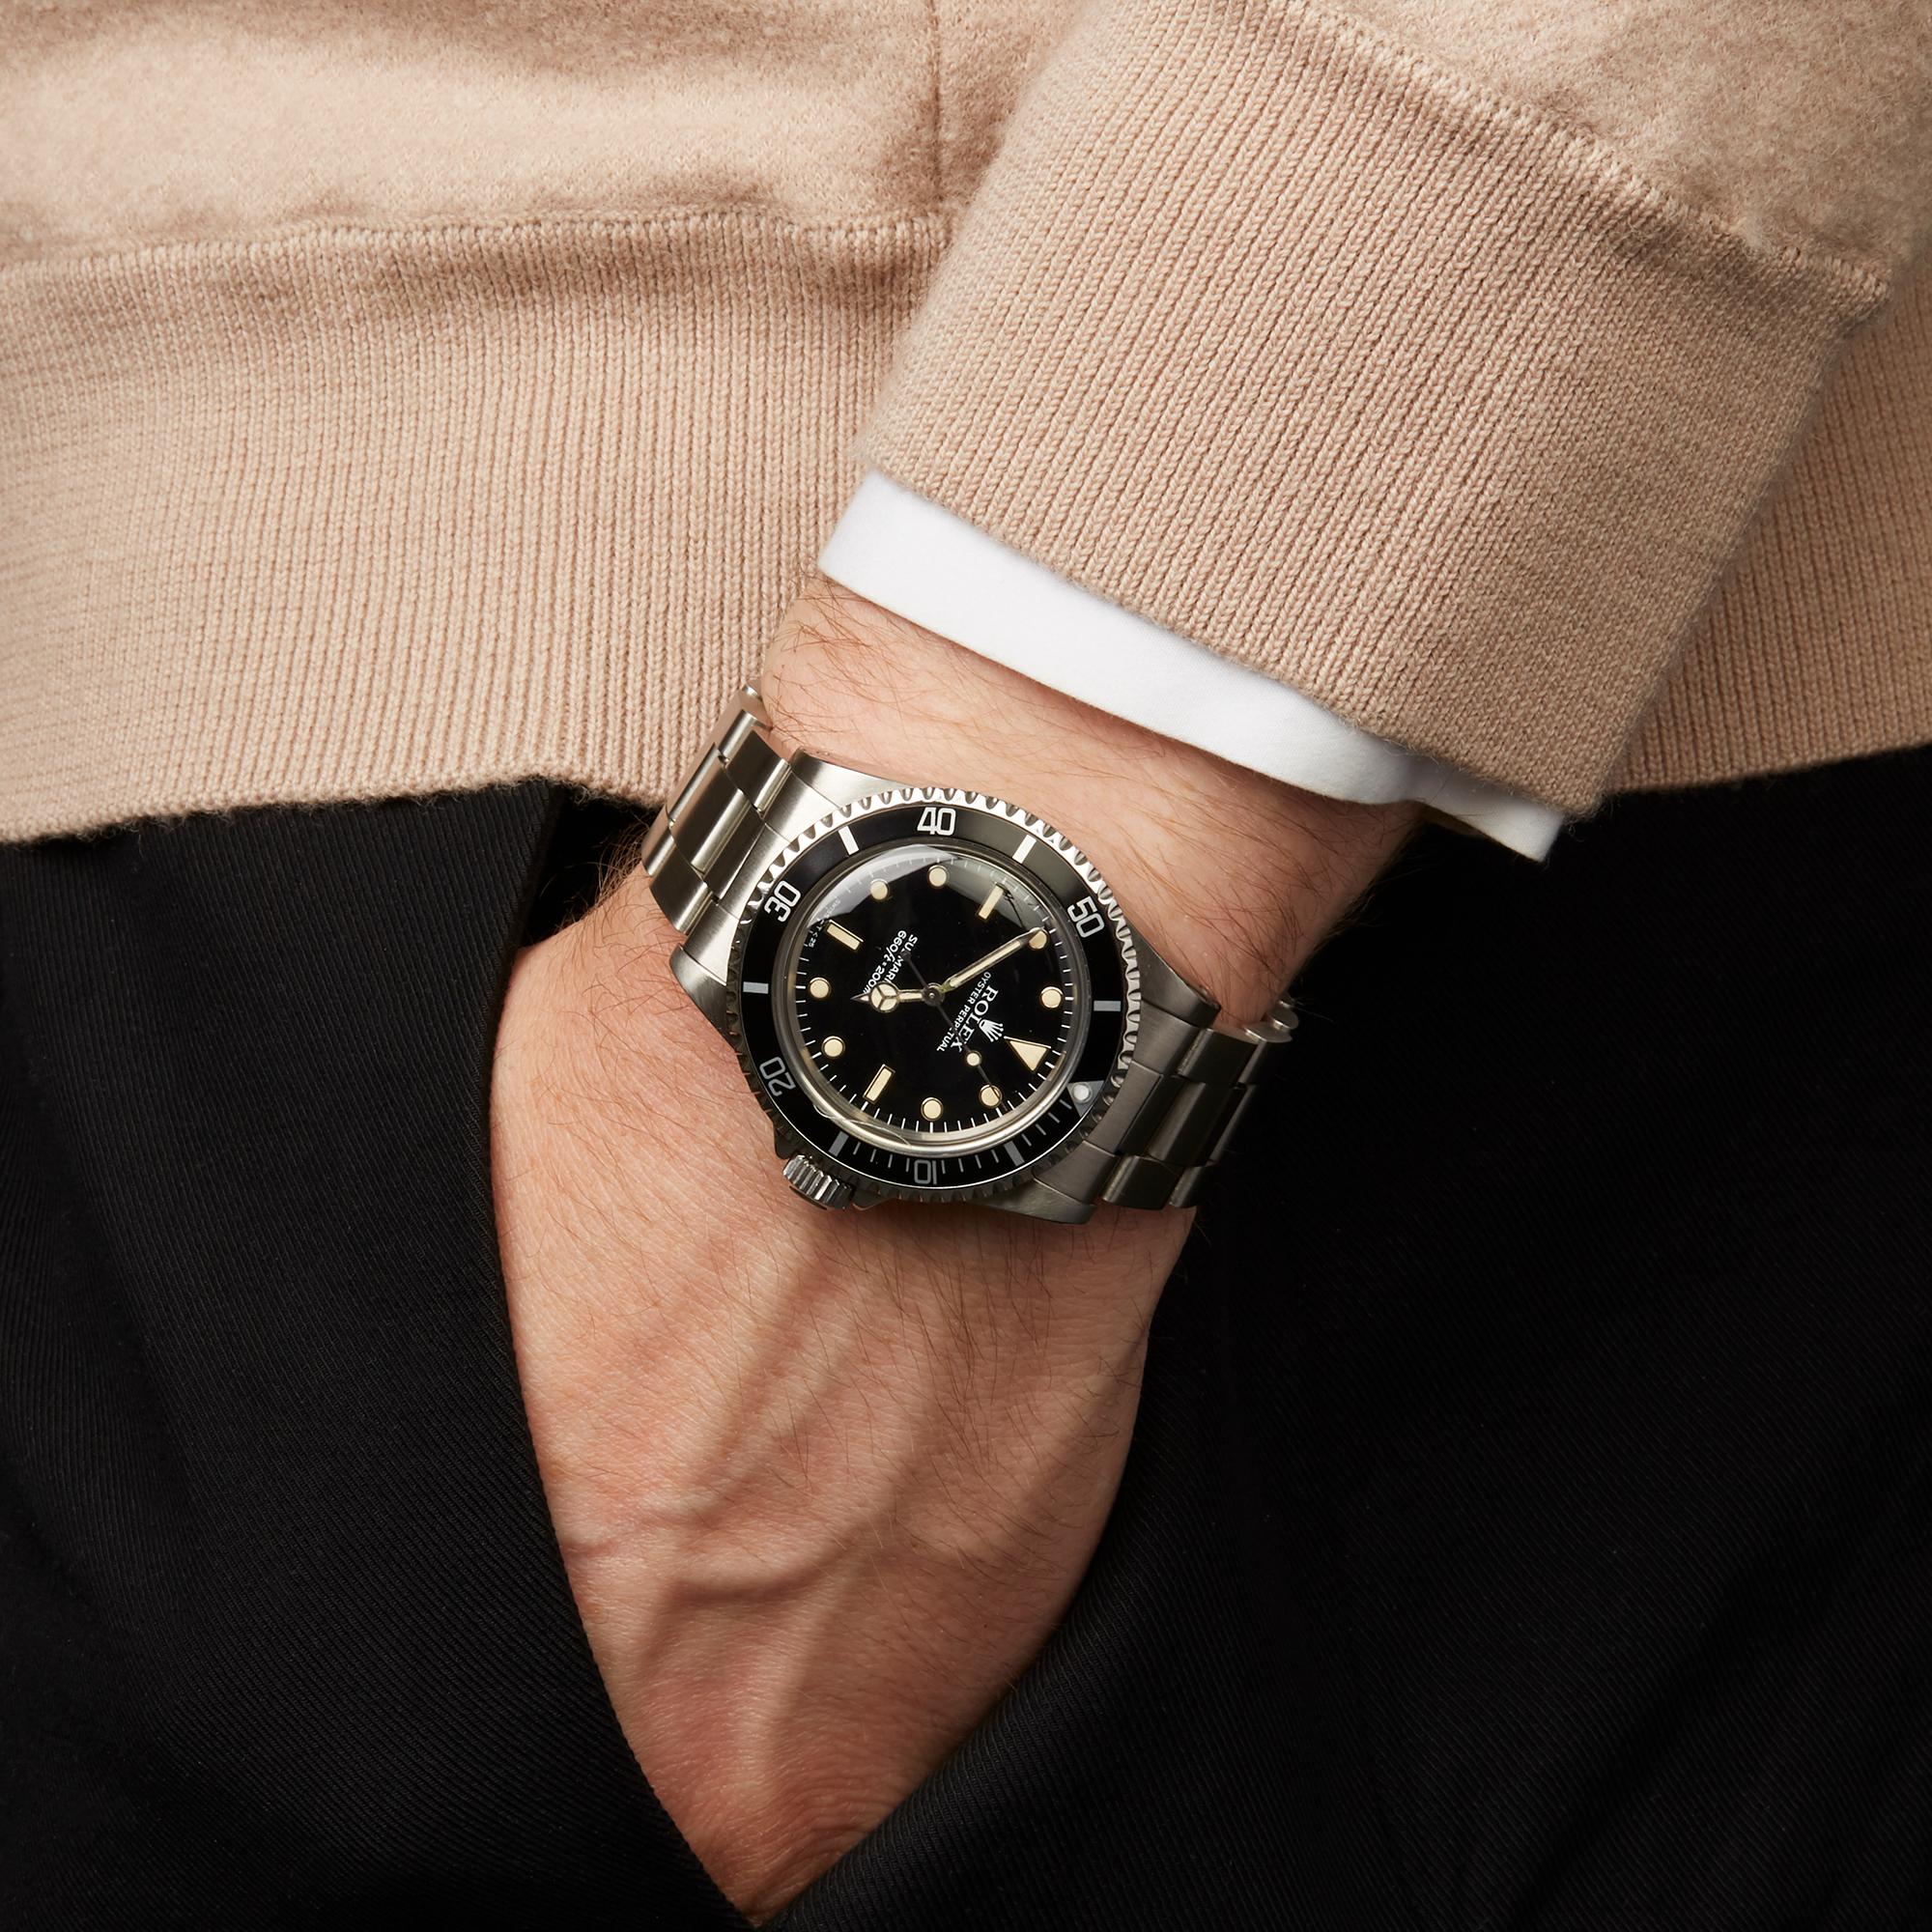 Rolex Submariner Non Date Stainless Steel 5513 Wristwatch 3